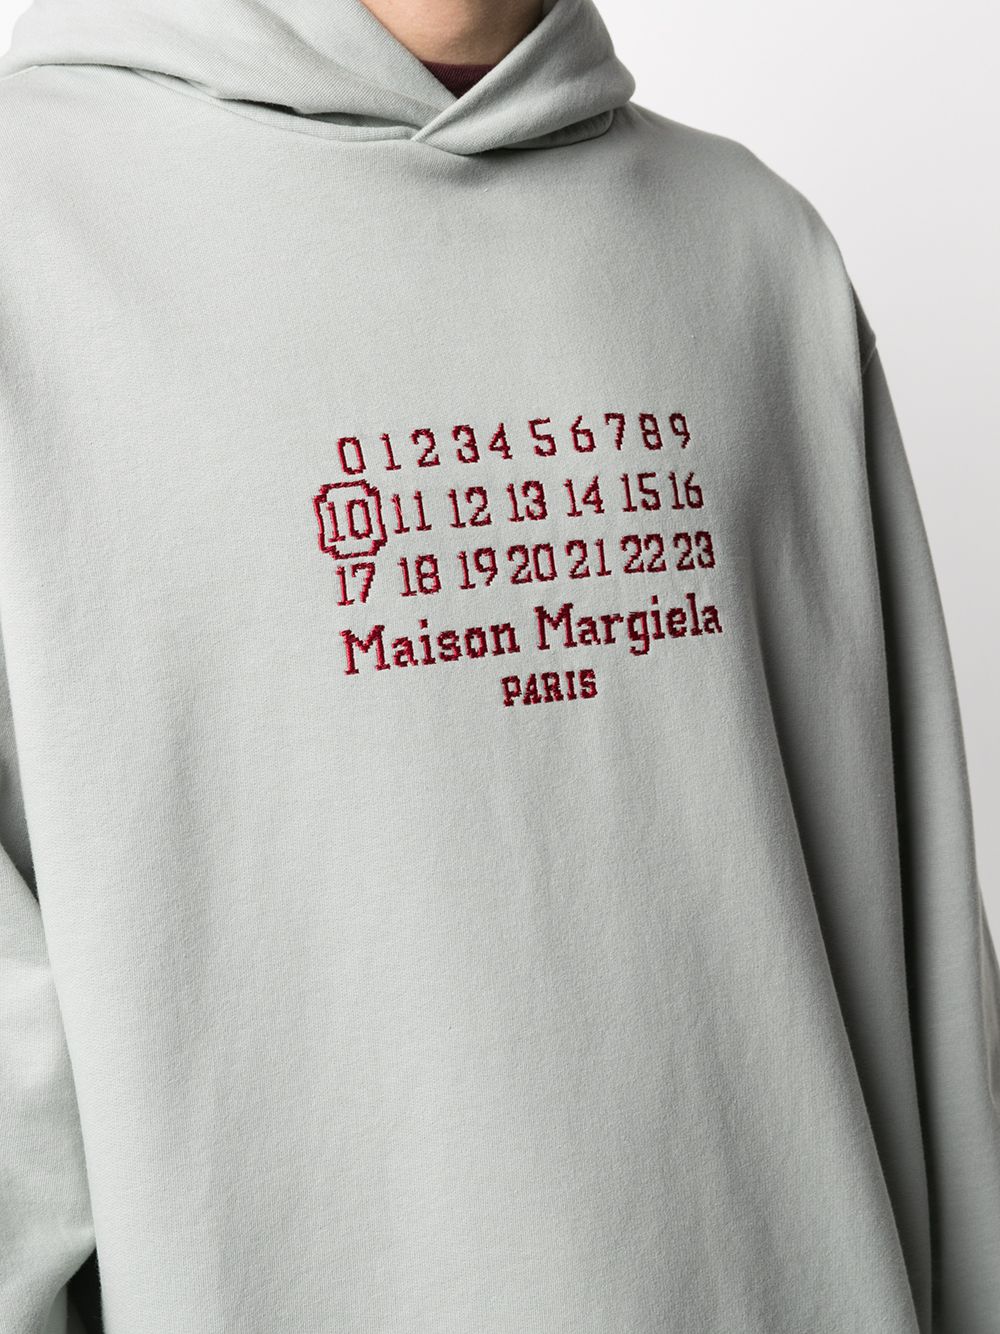 фото Maison margiela худи оверсайз с вышивкой